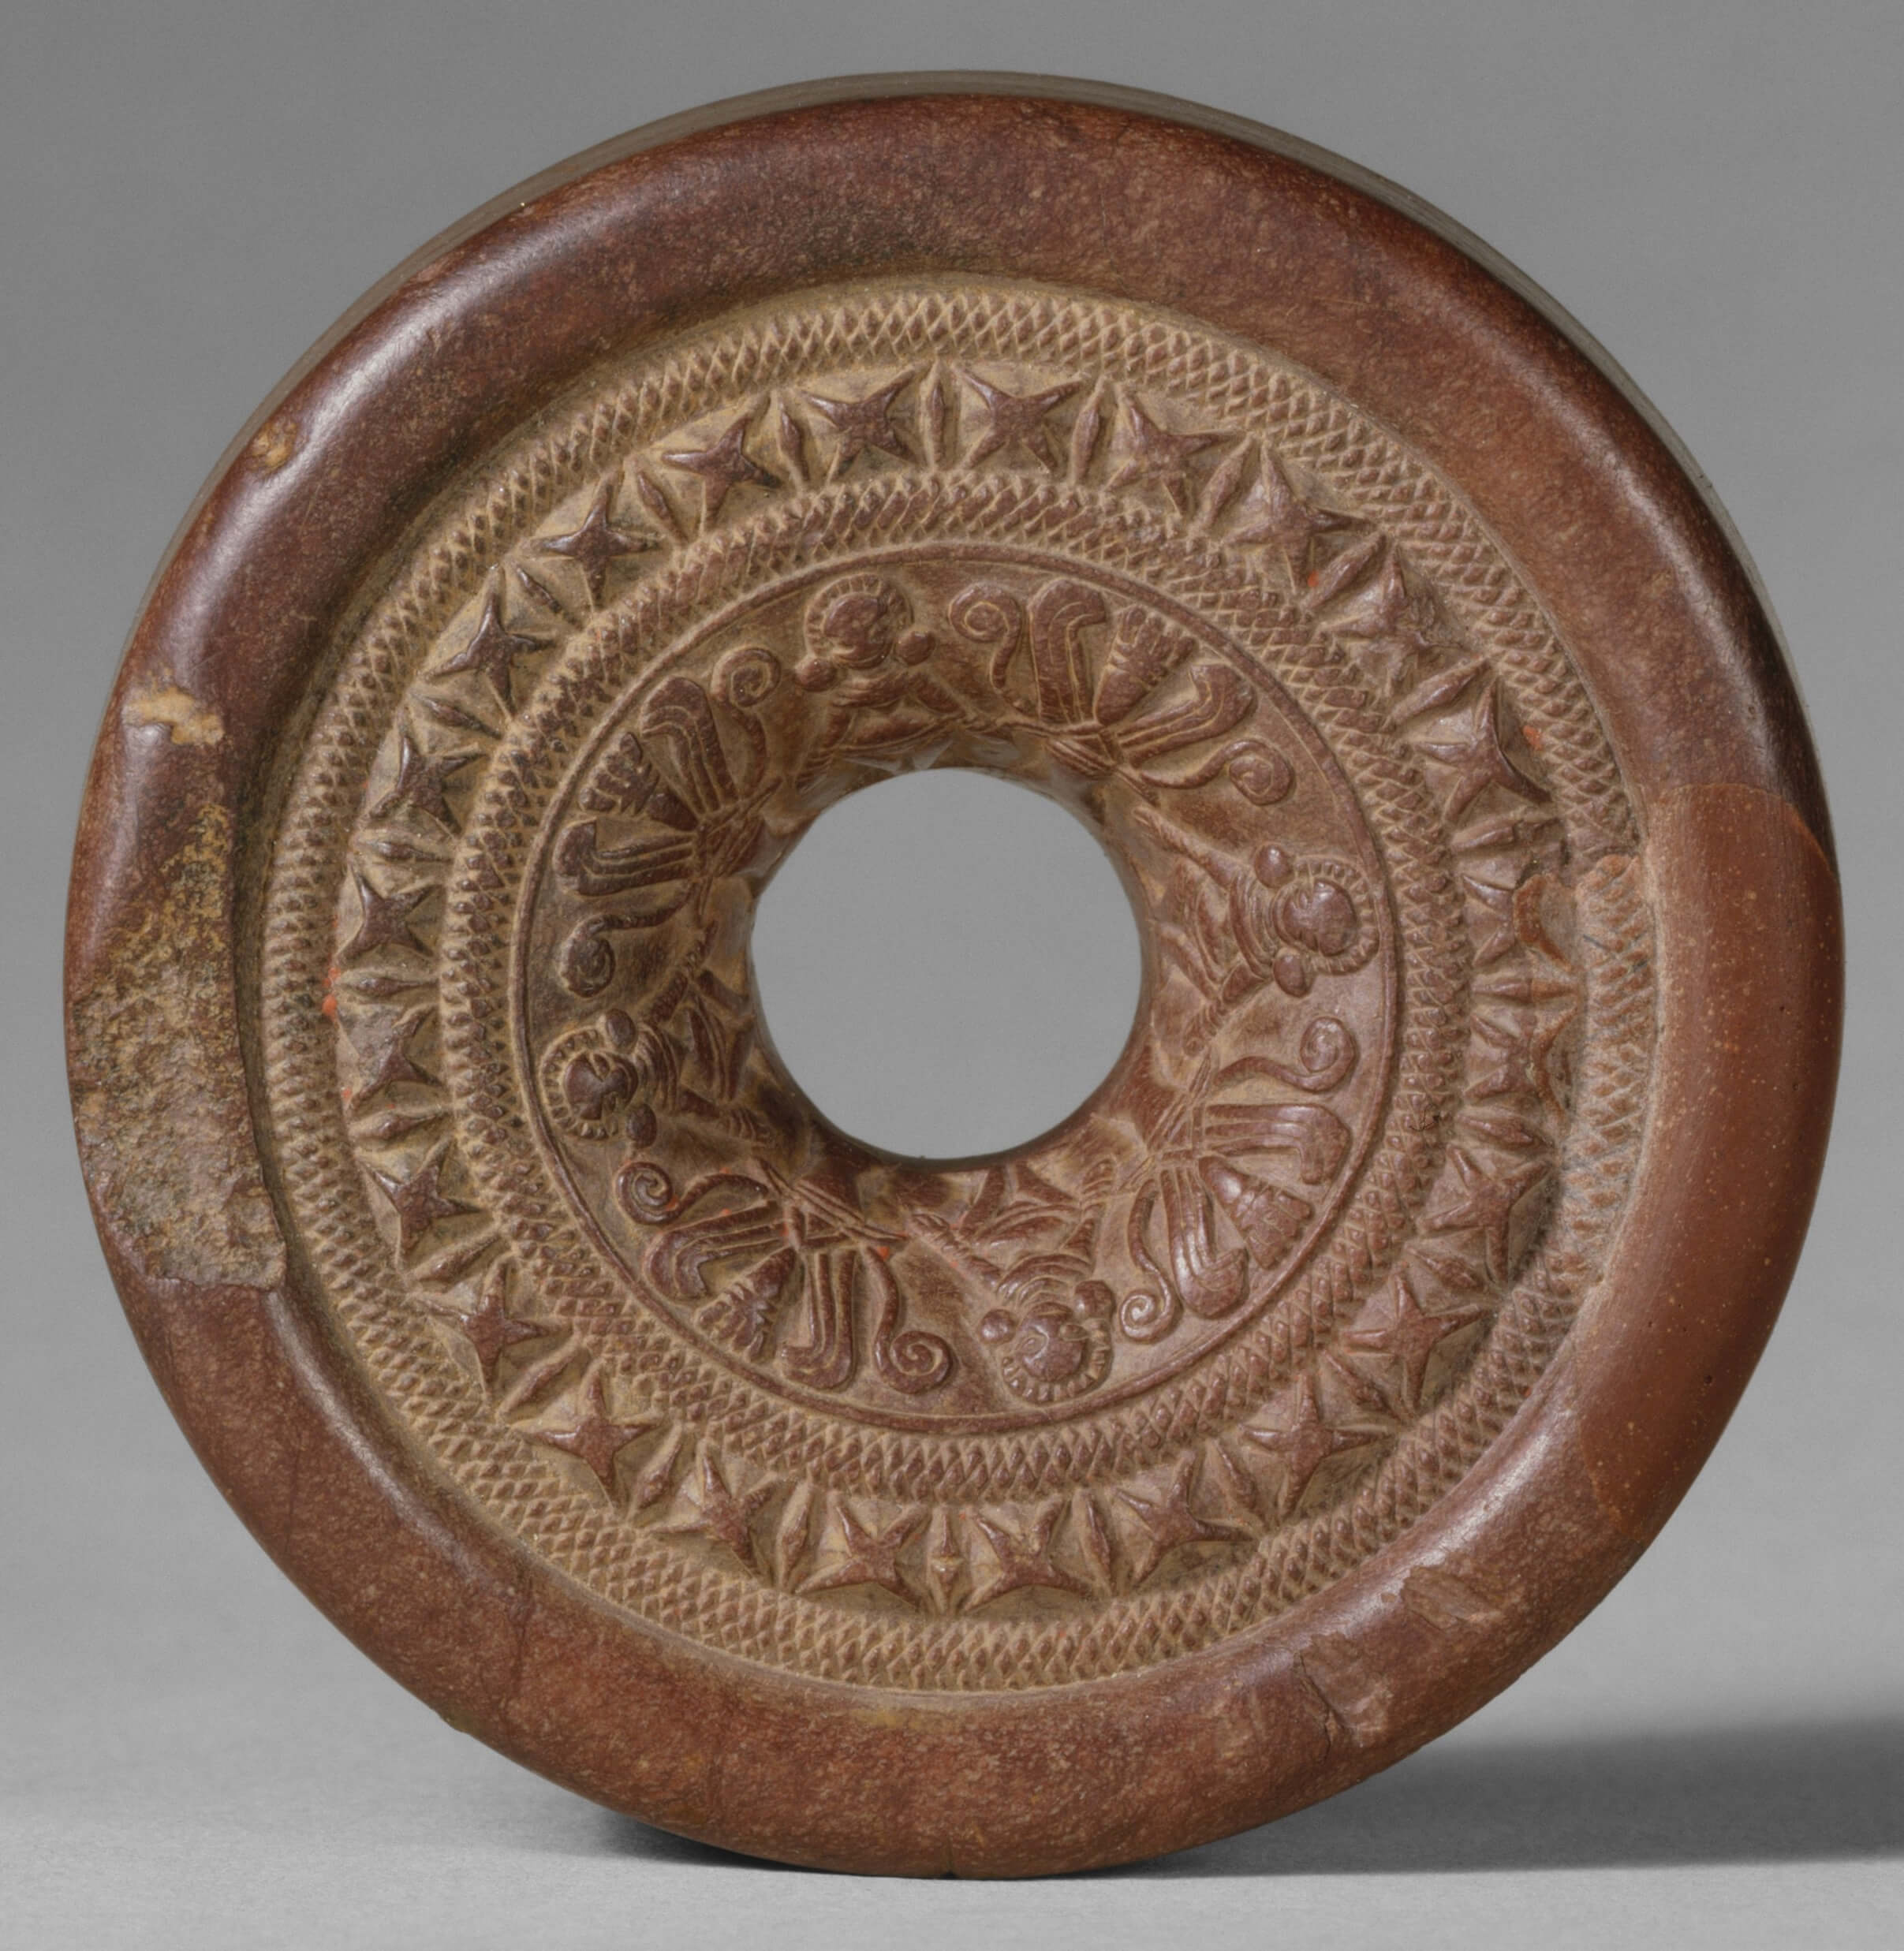 Ring stone art during Mauryan period